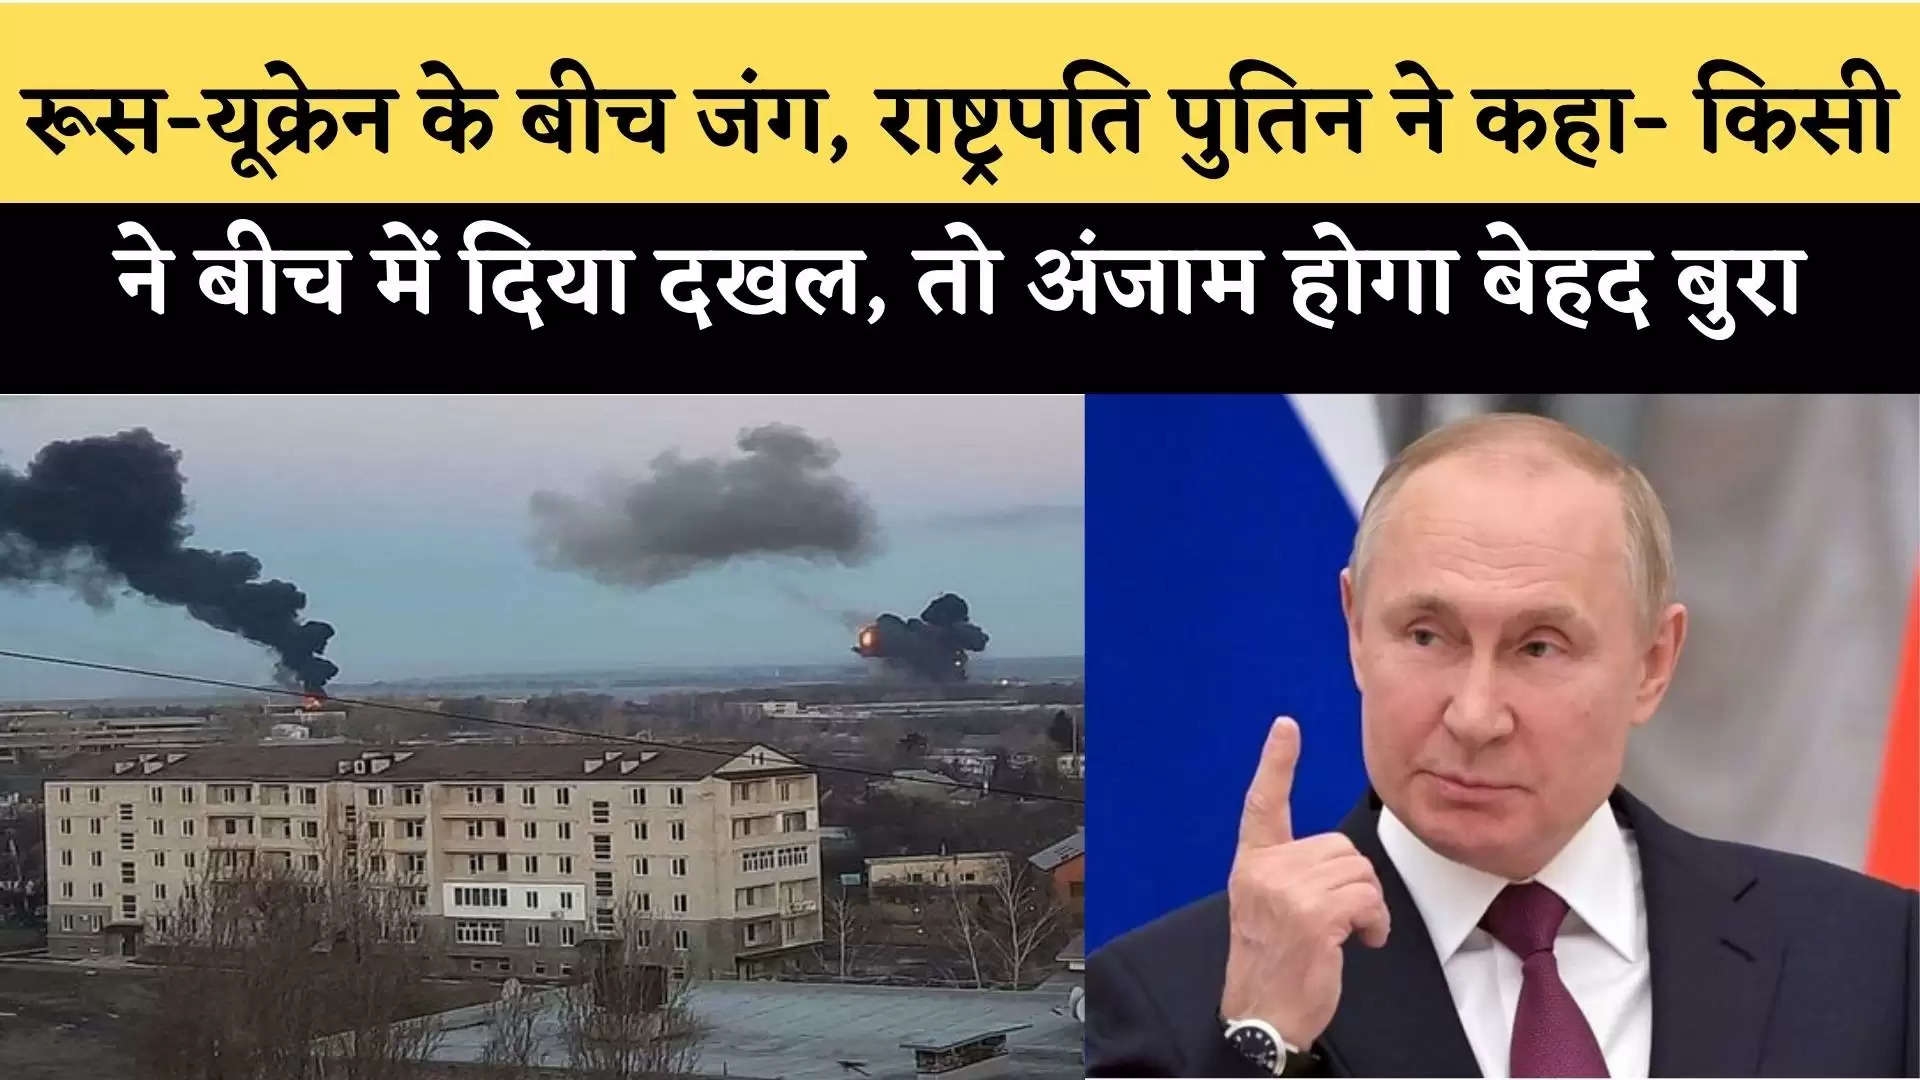 Russia-Ukraine War: रूस-यूक्रेन के बीच जंग, राष्ट्रपति पुतिन ने कहा- किसी ने बीच में दिया दखल, तो अंजाम होगा बेहद बुरा